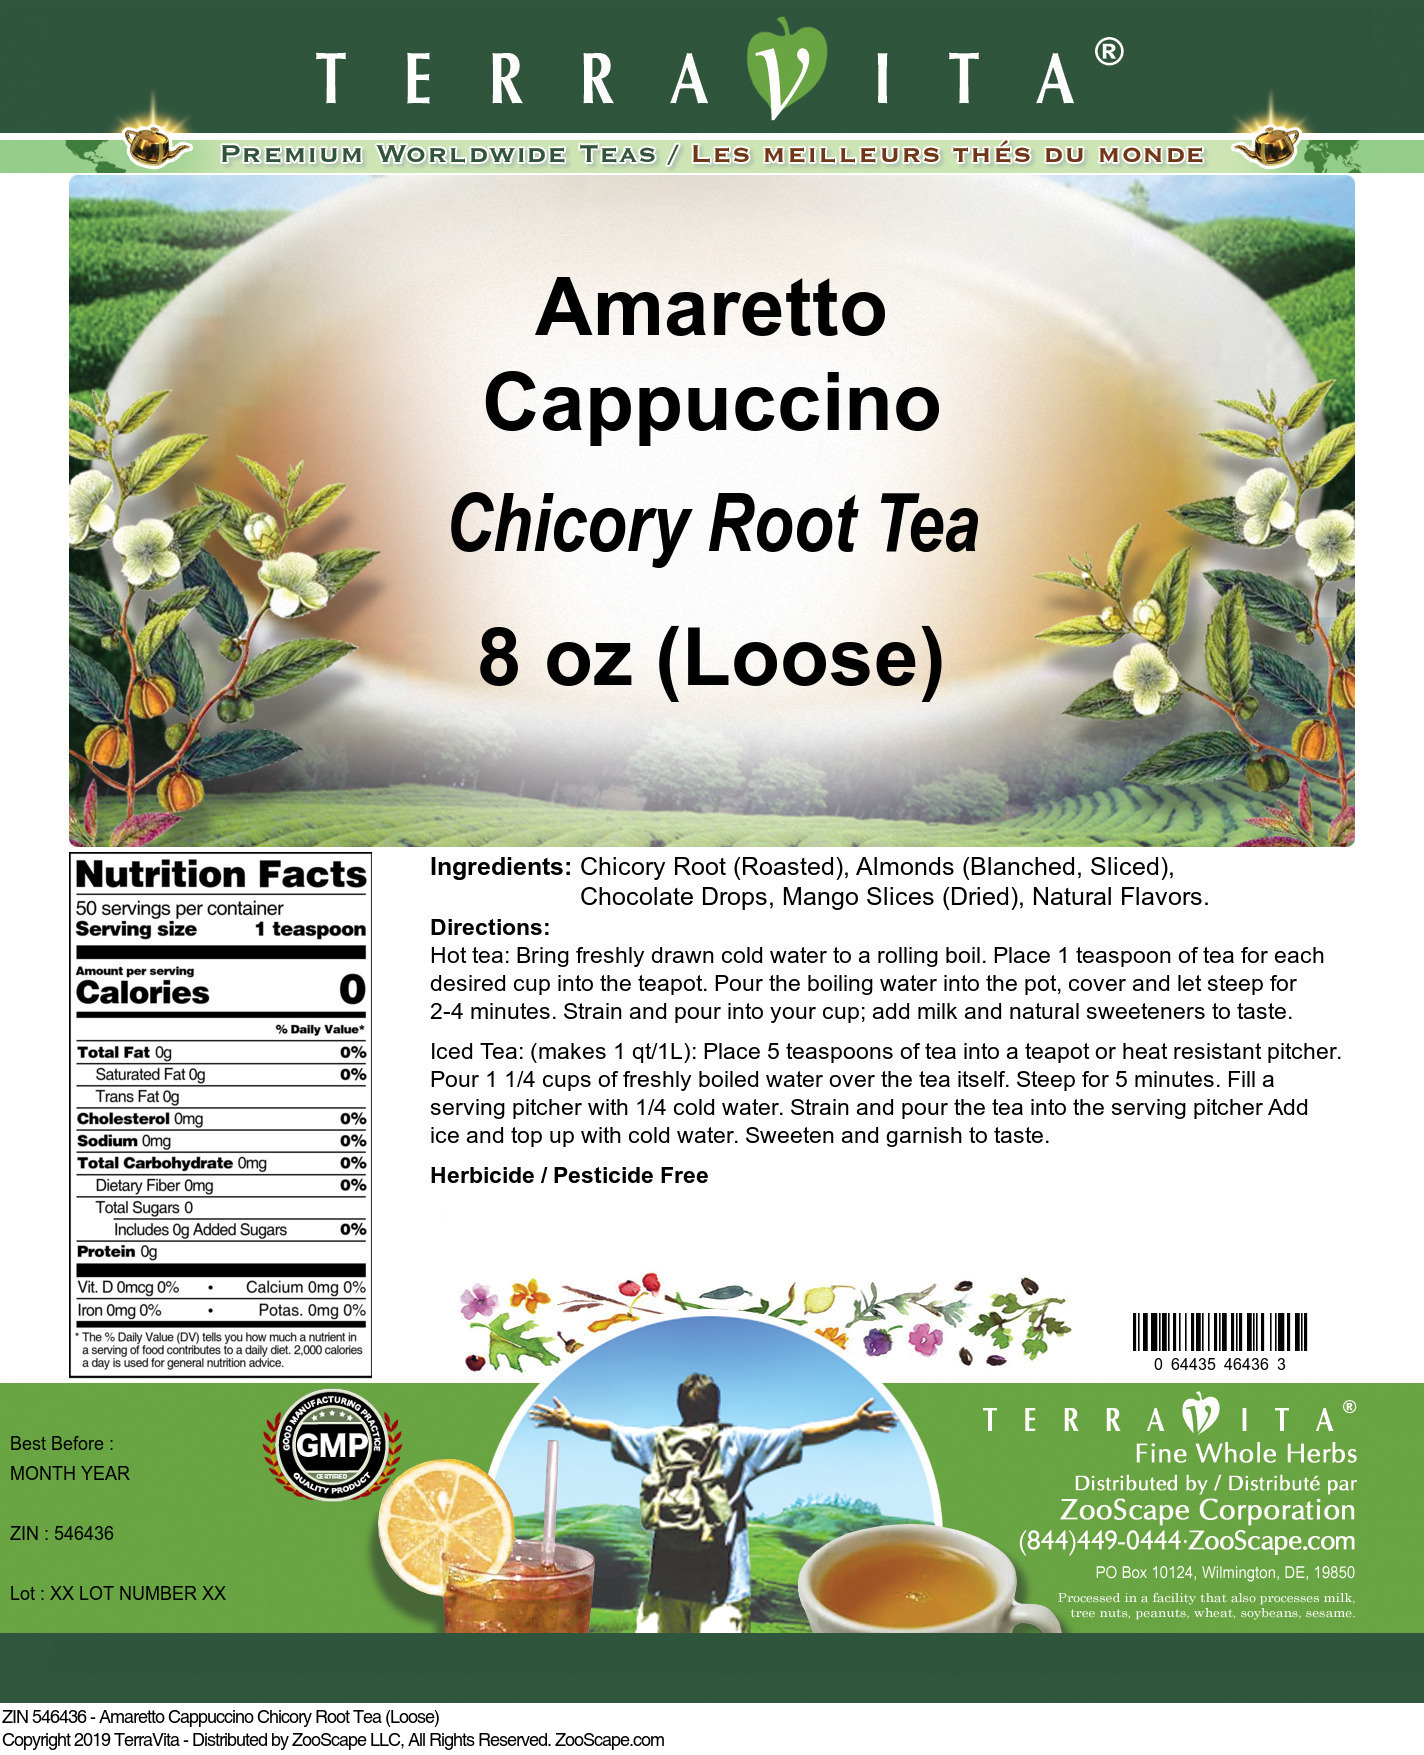 Amaretto Cappuccino Chicory Root Tea (Loose) - Label